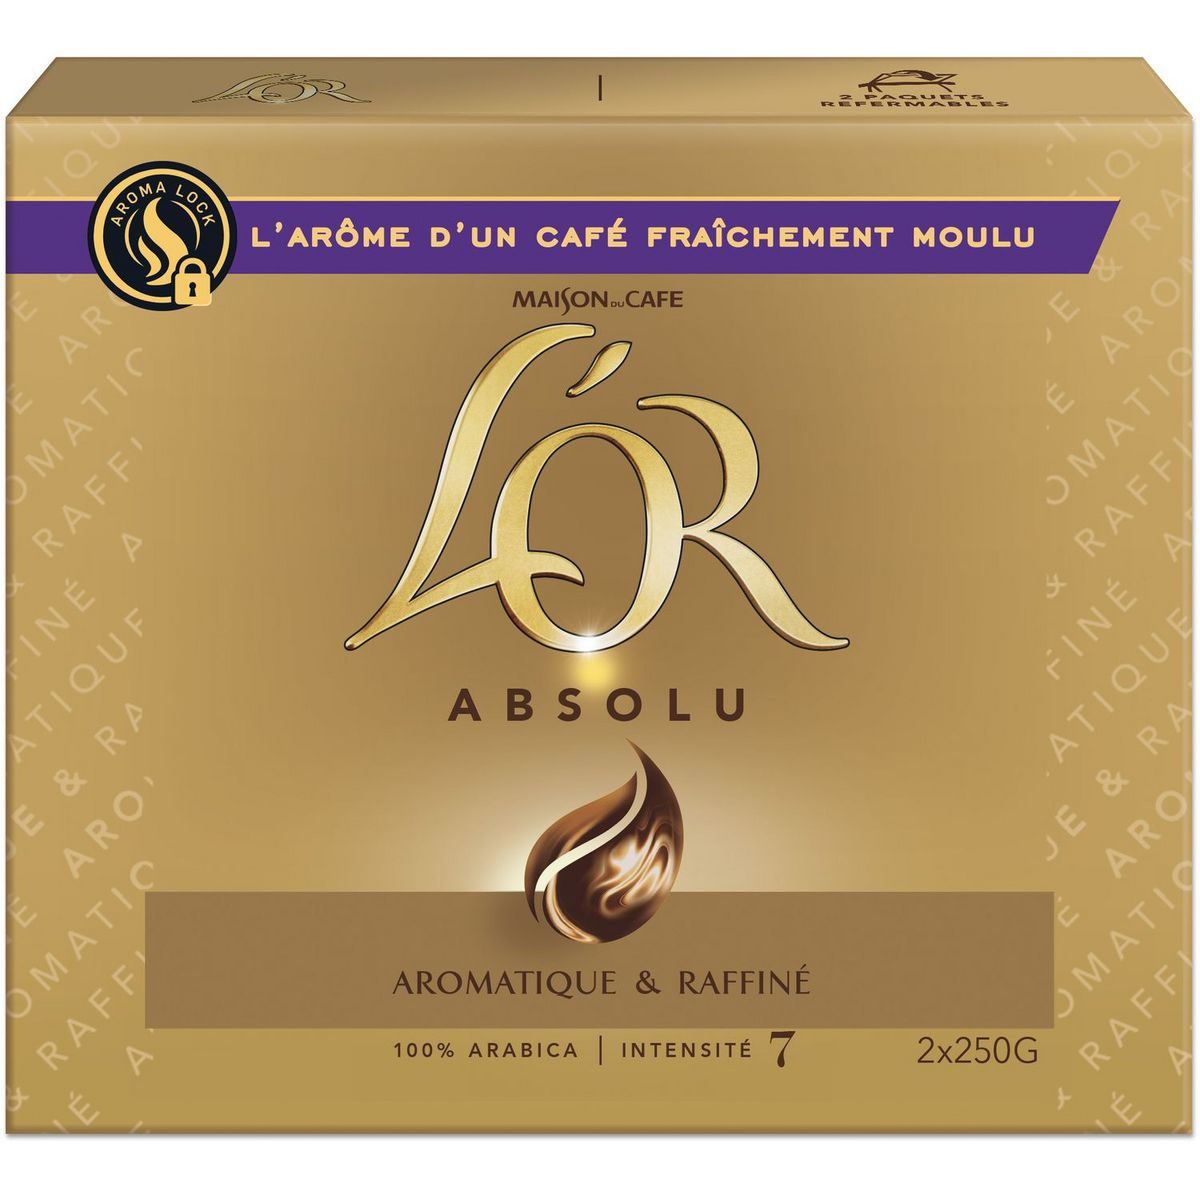 L'OR Café moulu absolu aromatique et raffiné intensité 7 2X250g